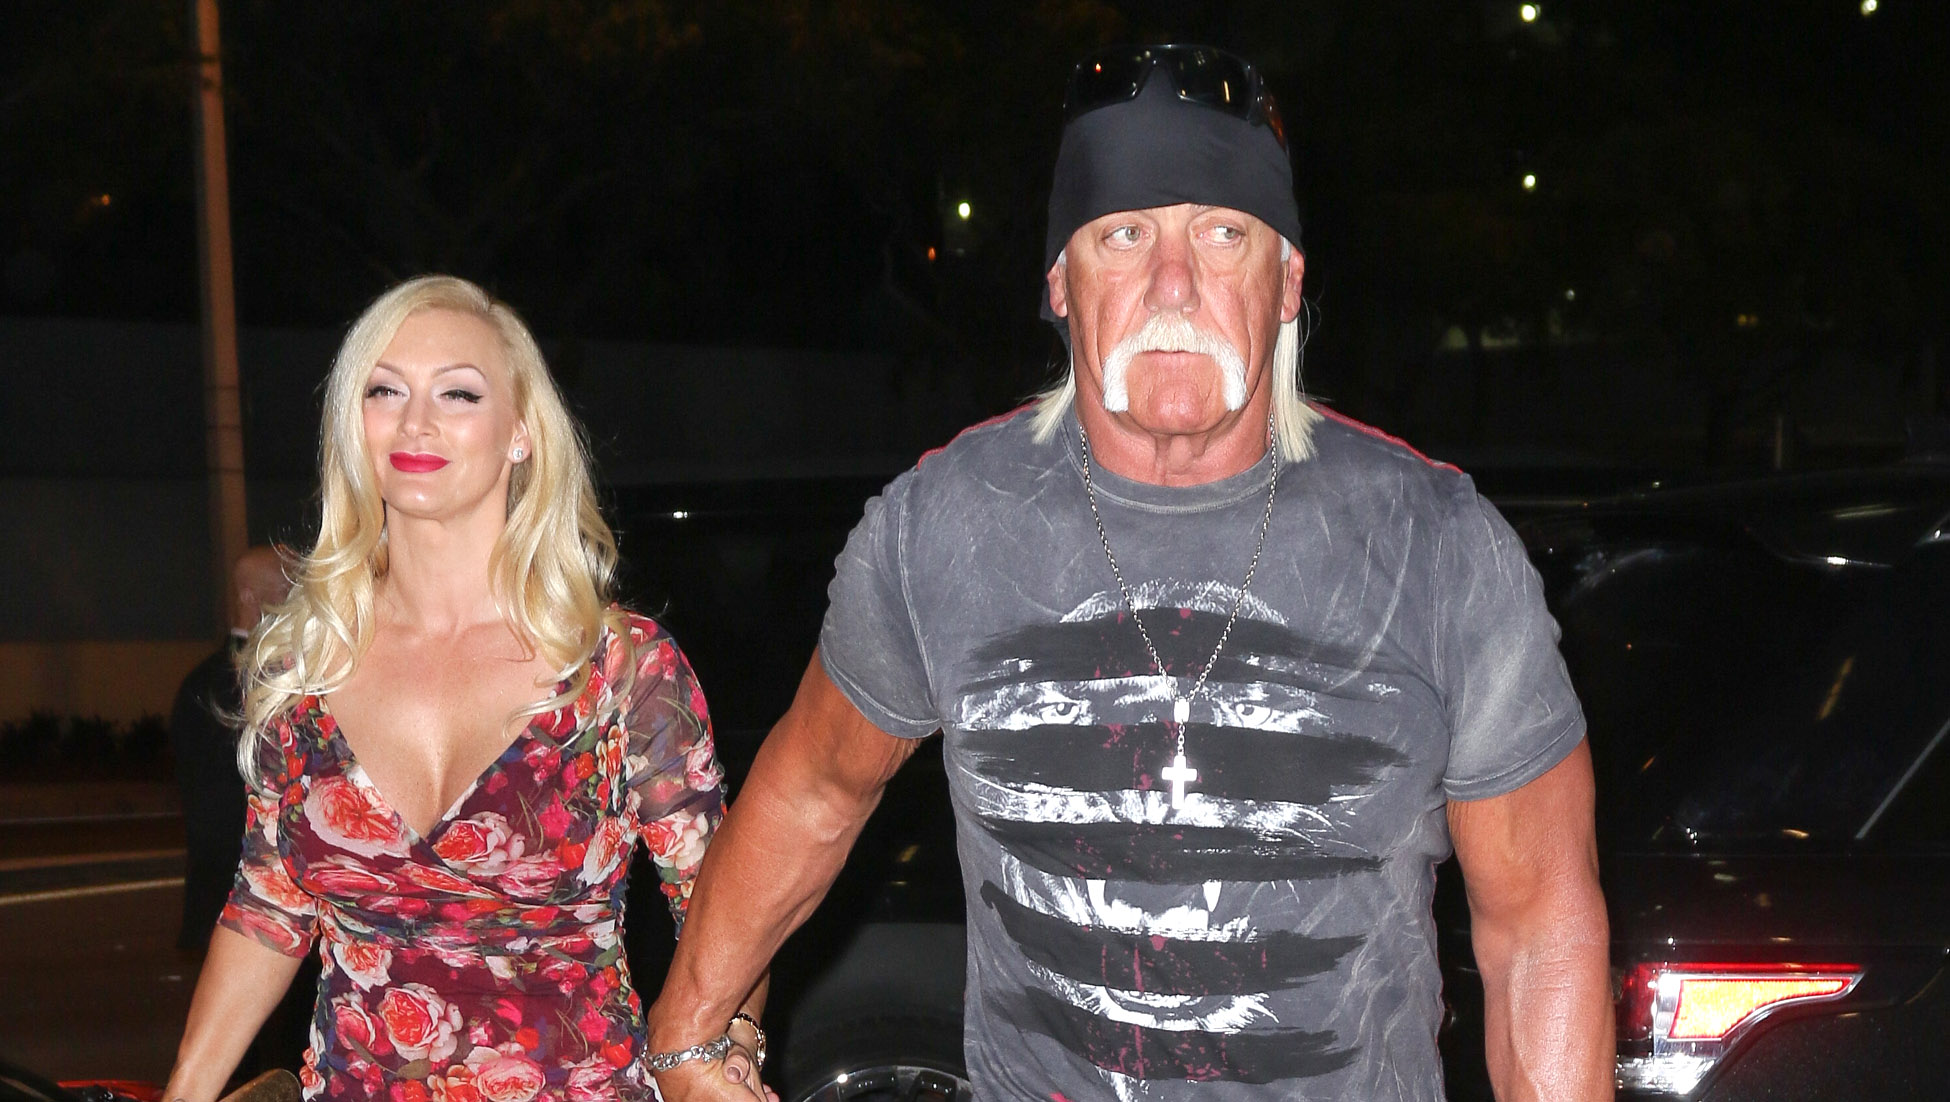 Mcdaniel hot jennifer Hulk Hogan's